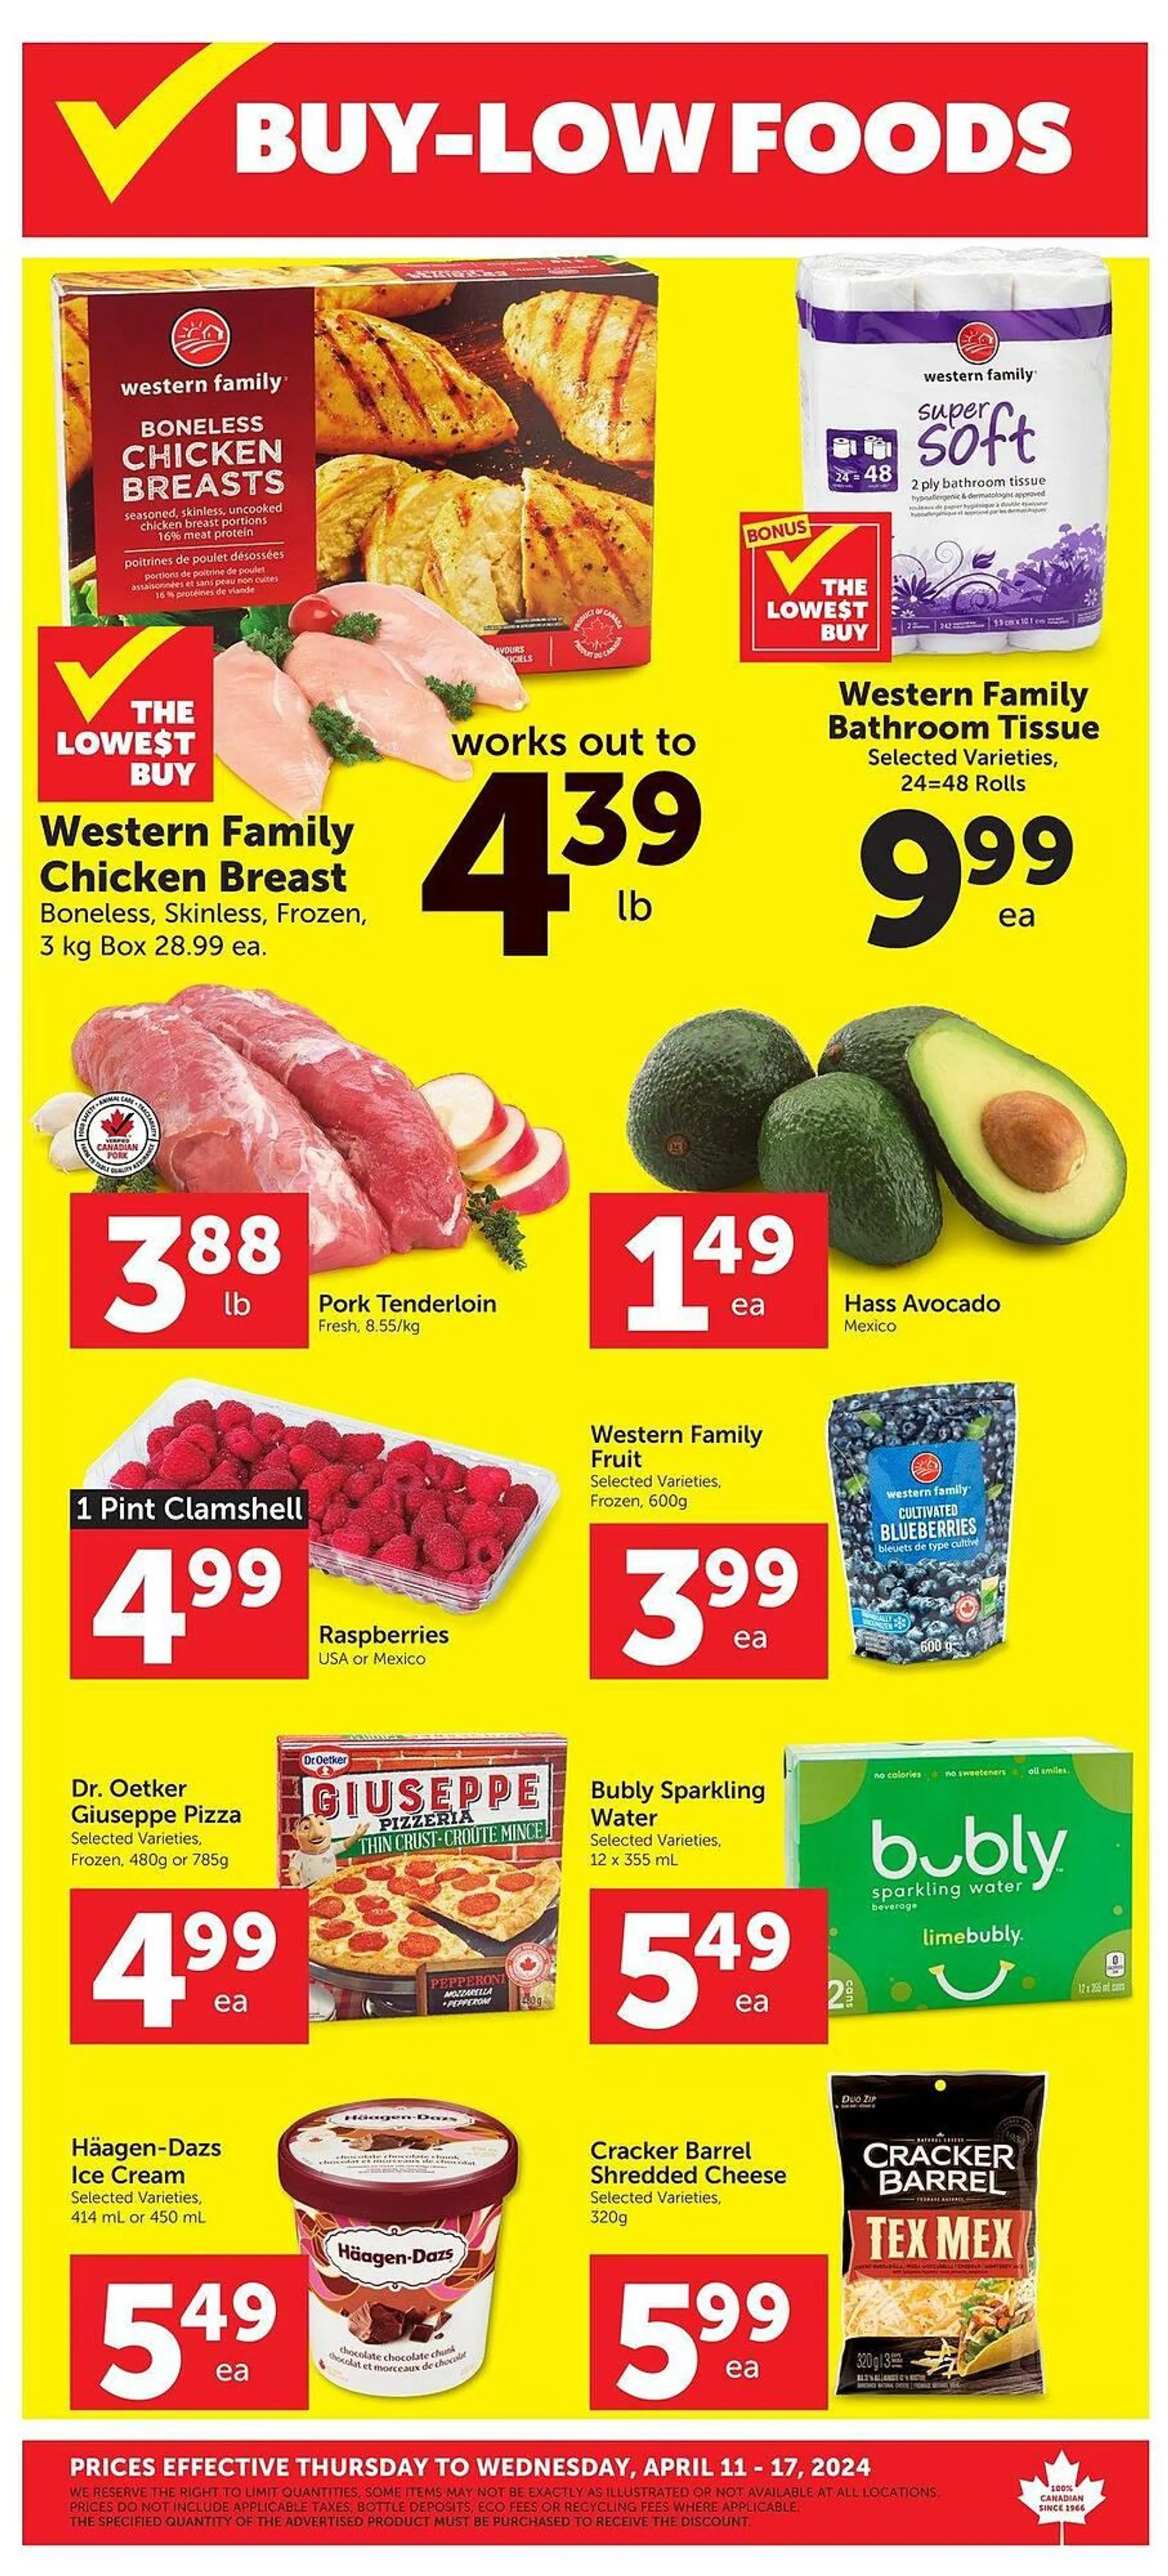 Buy-Low Foods flyer - 1